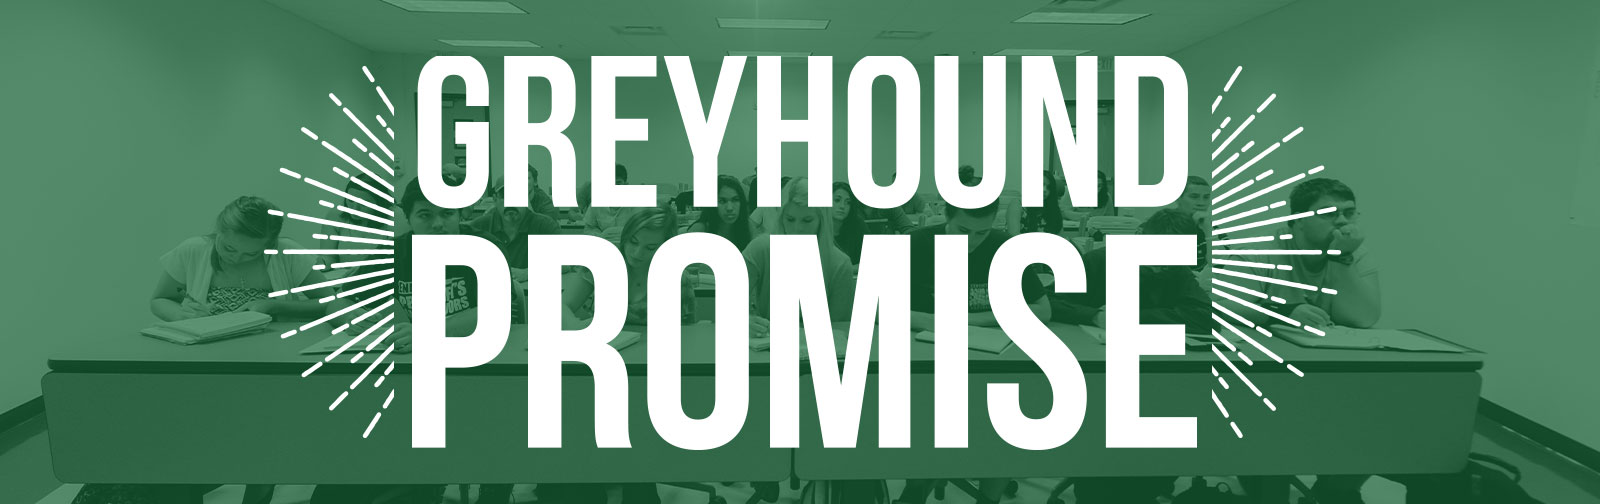 Greyhound Promise Banner